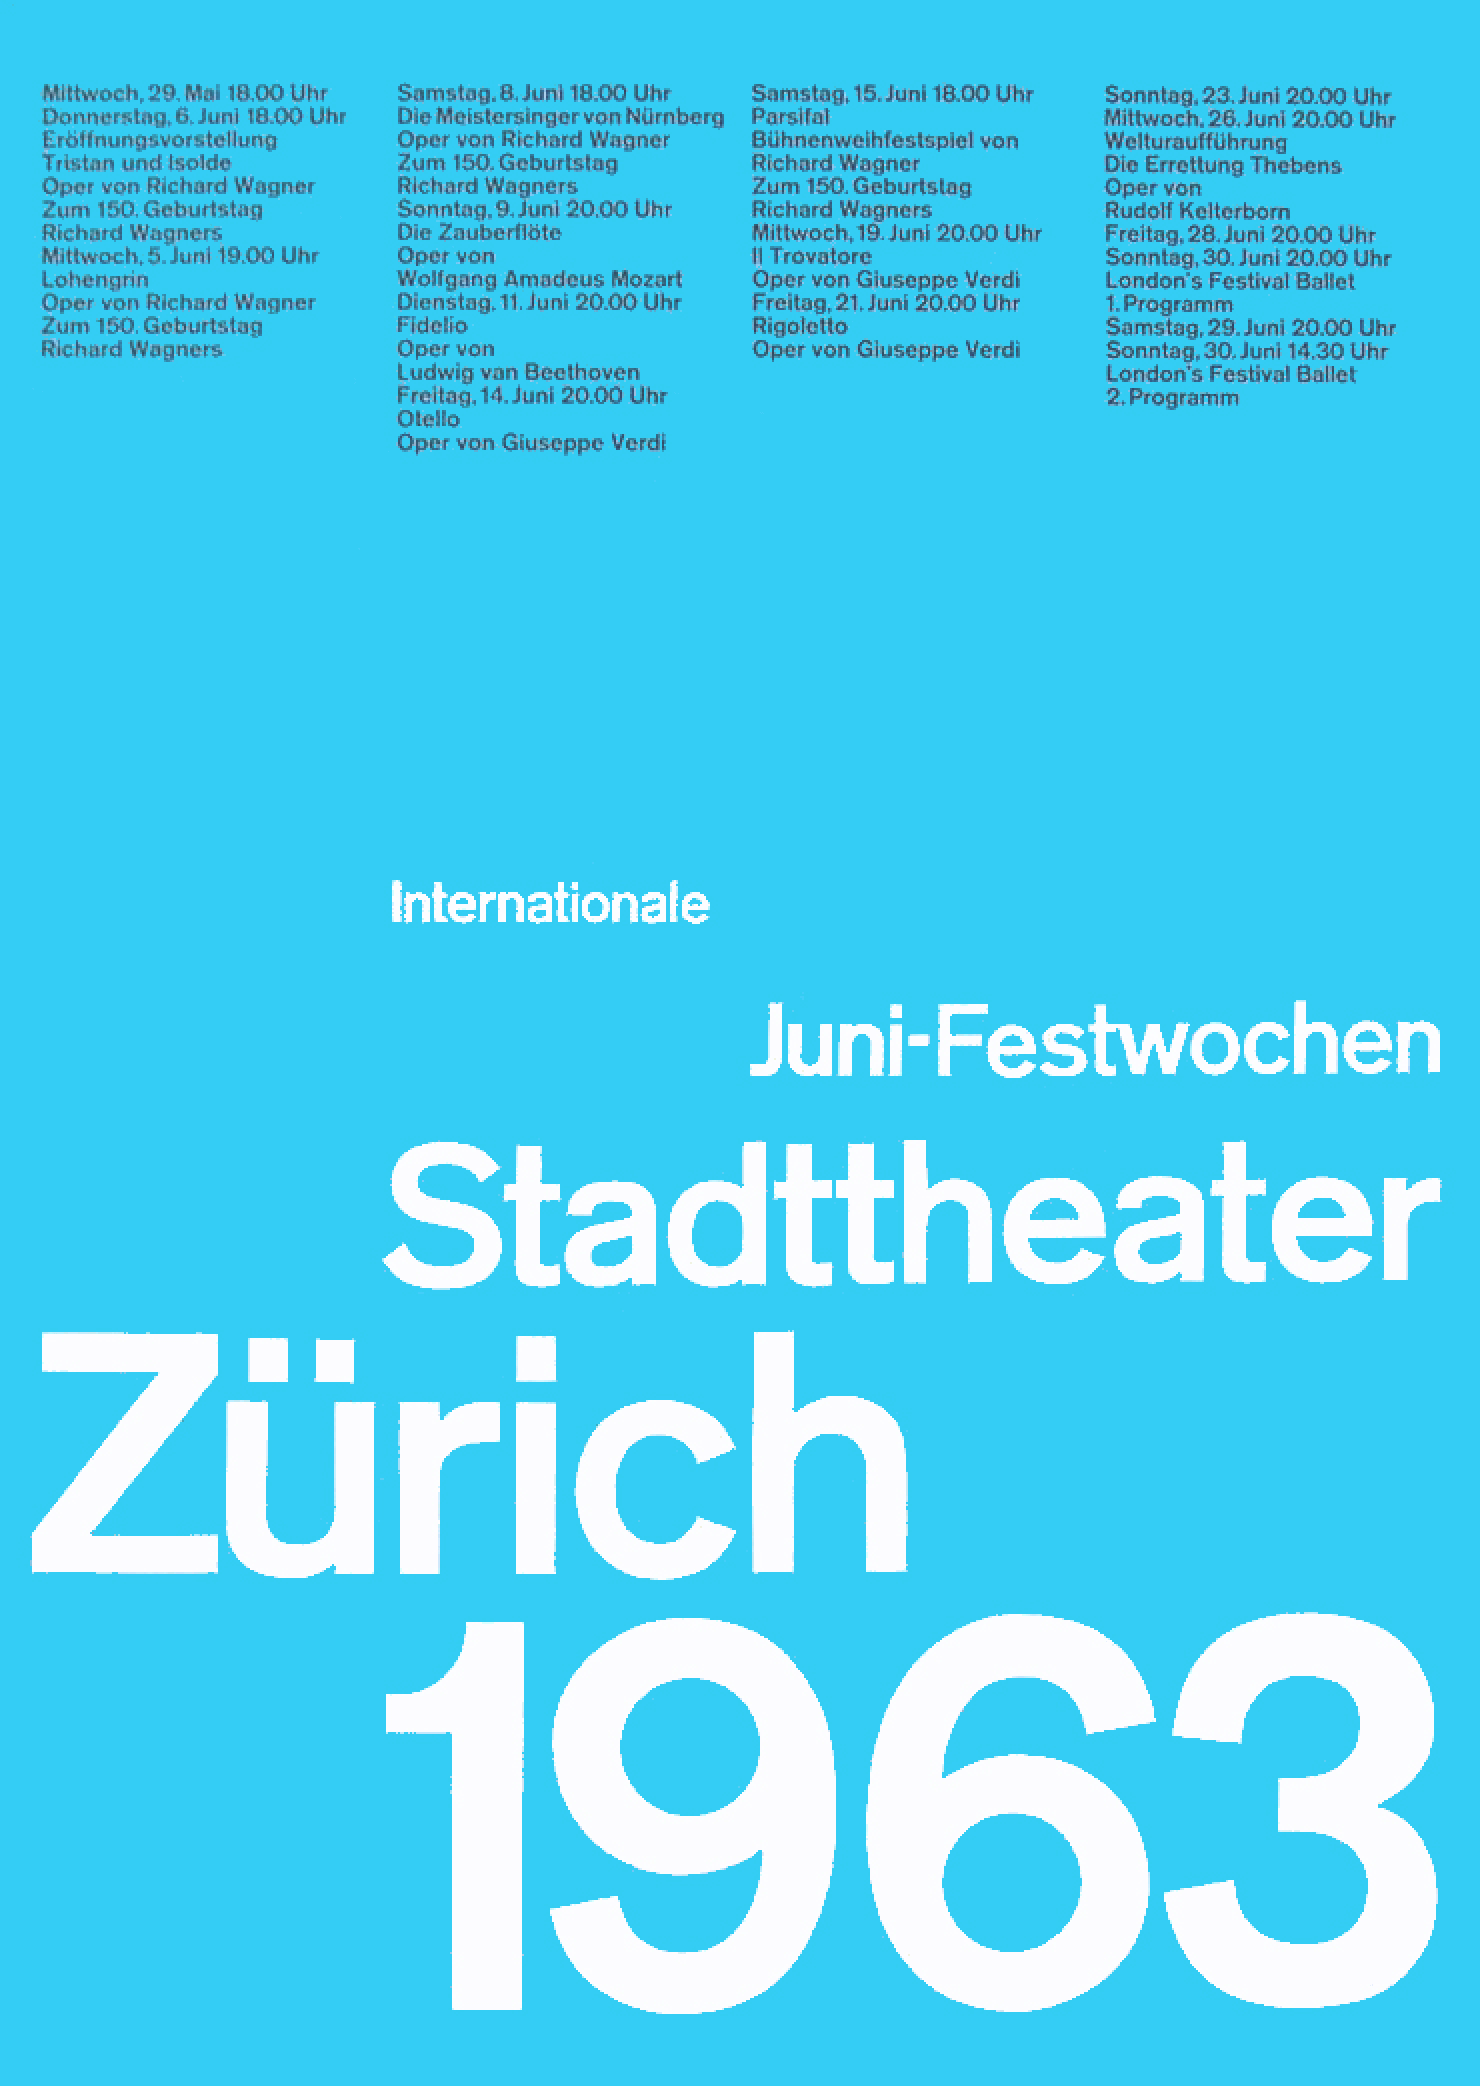 A poster design by Josef Müller-Brockmann